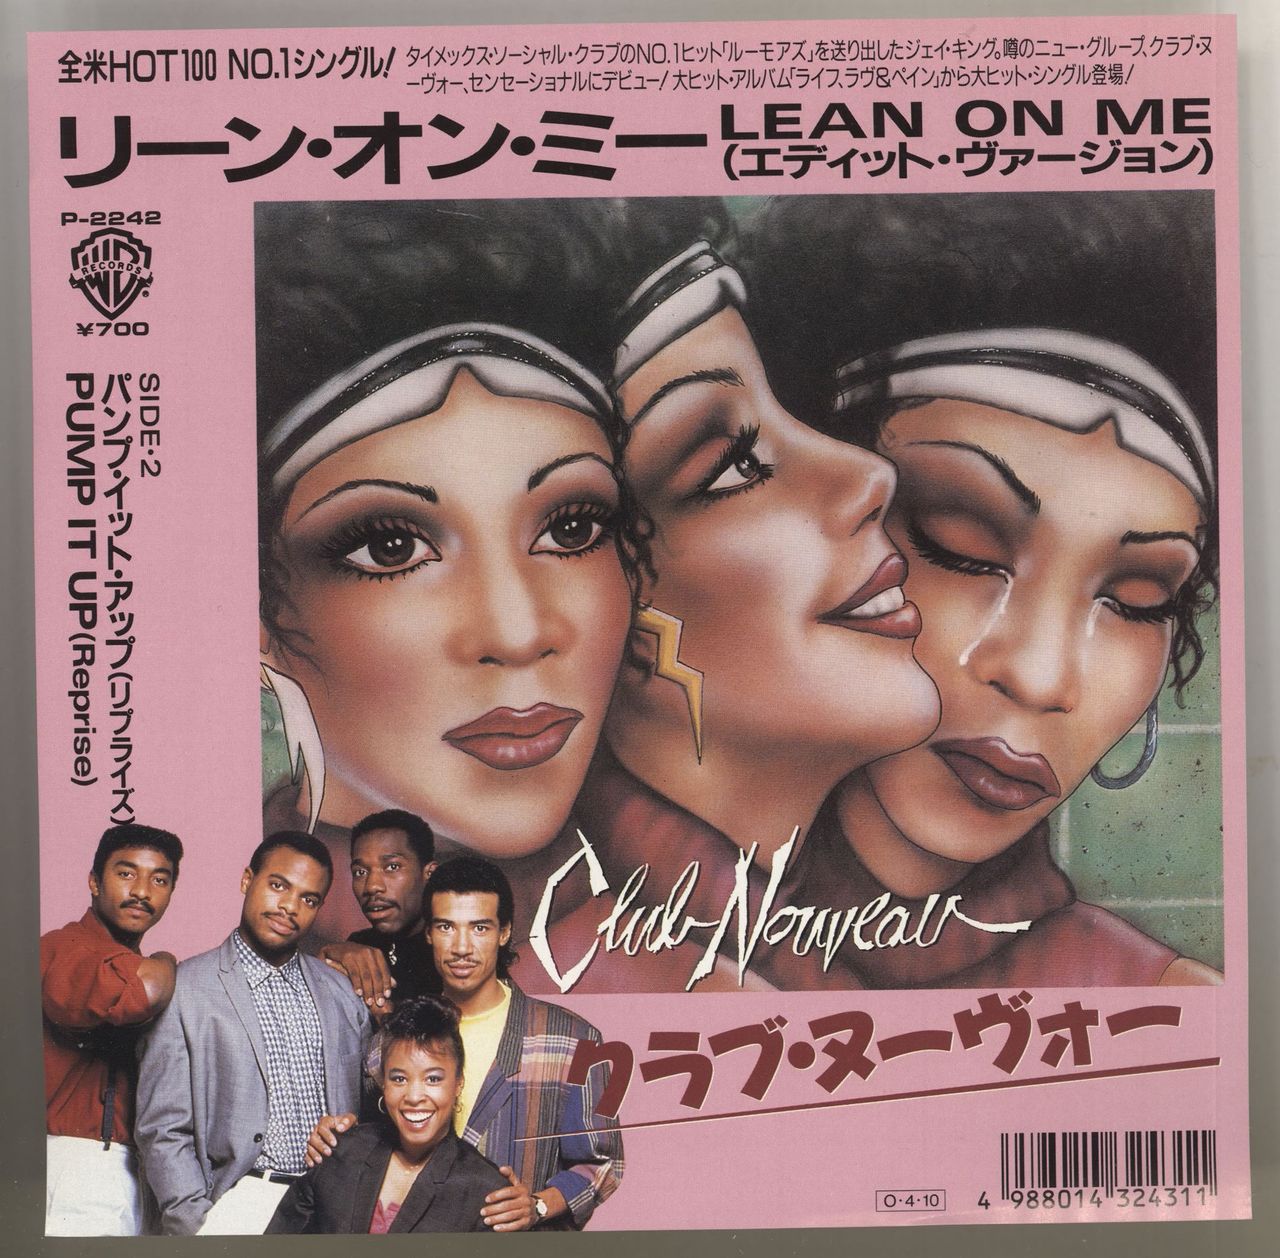 Club Nouveau Lean On Me Japanese Promo 7